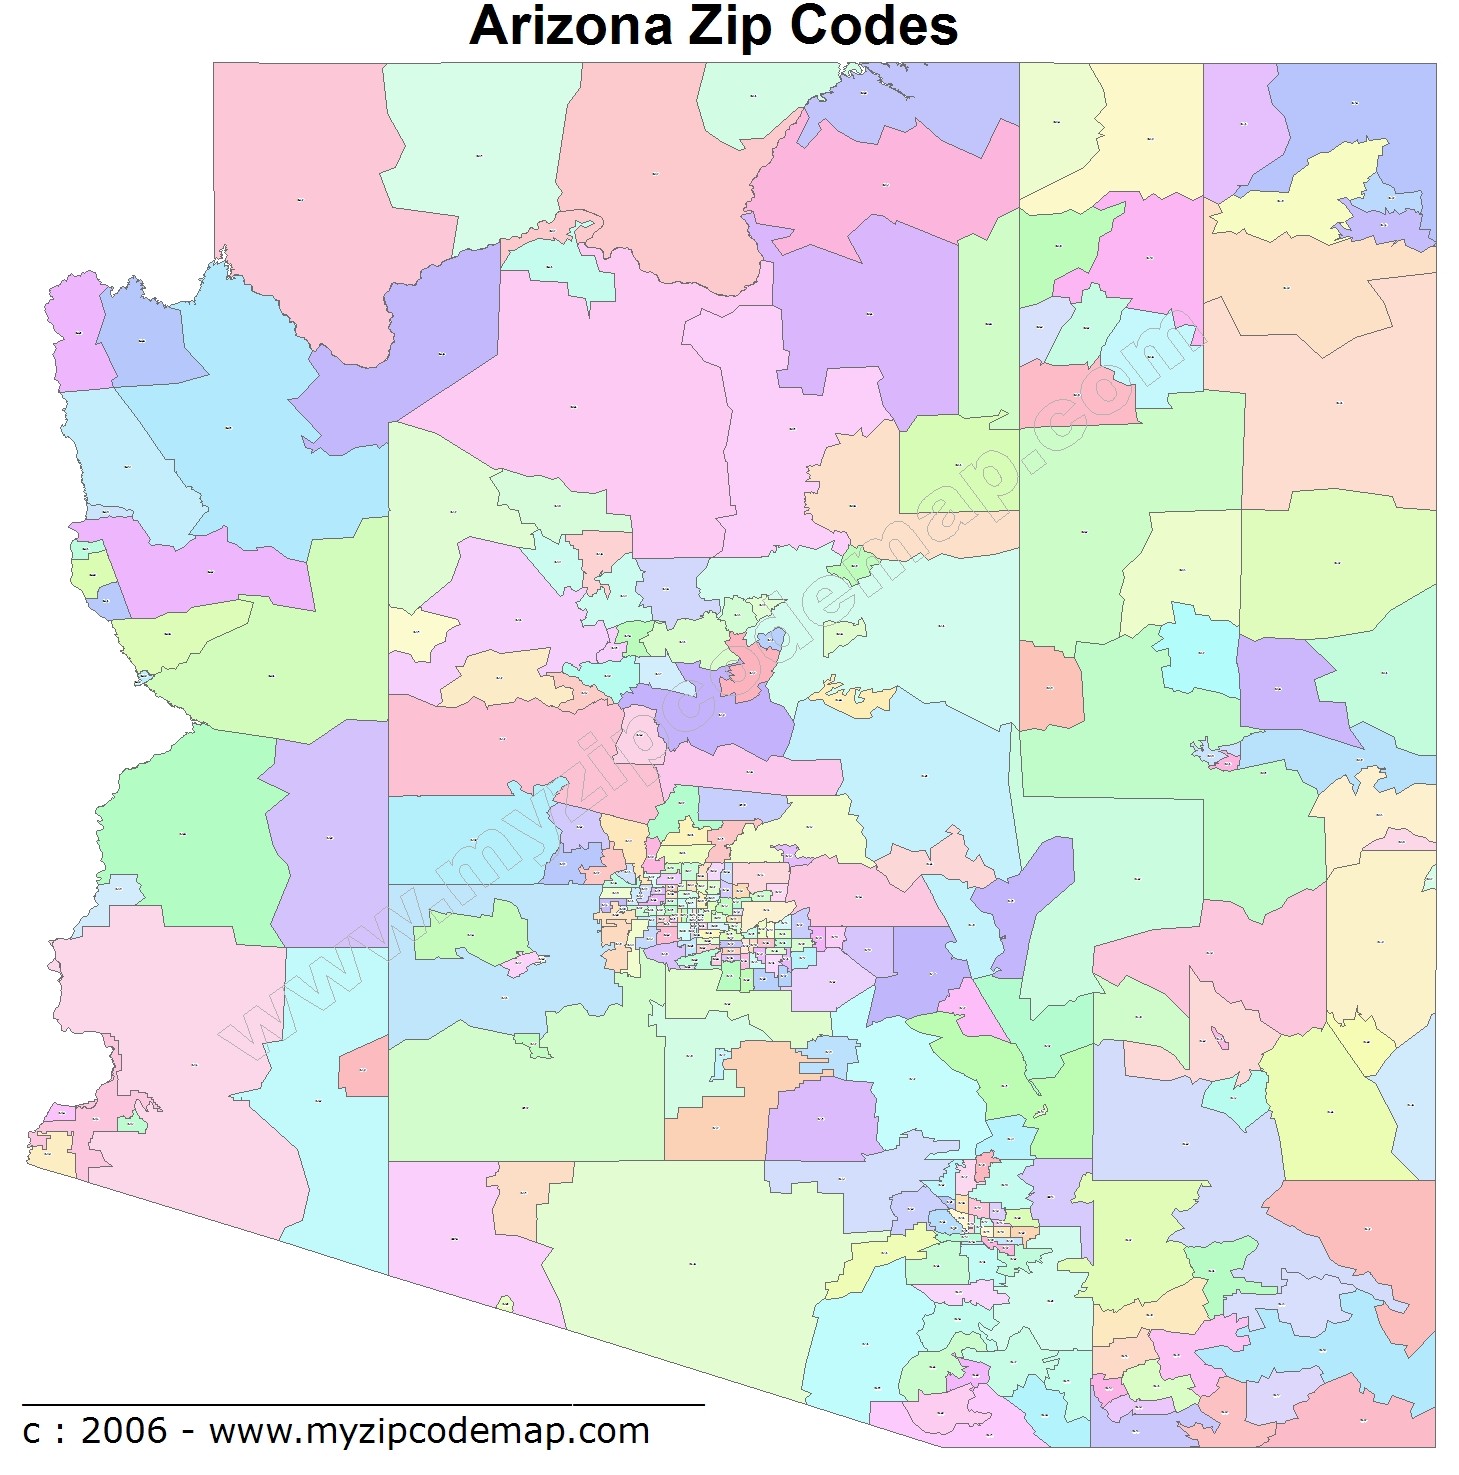 Arizona Zip Code Maps Free Arizona Zip Code Maps 1252